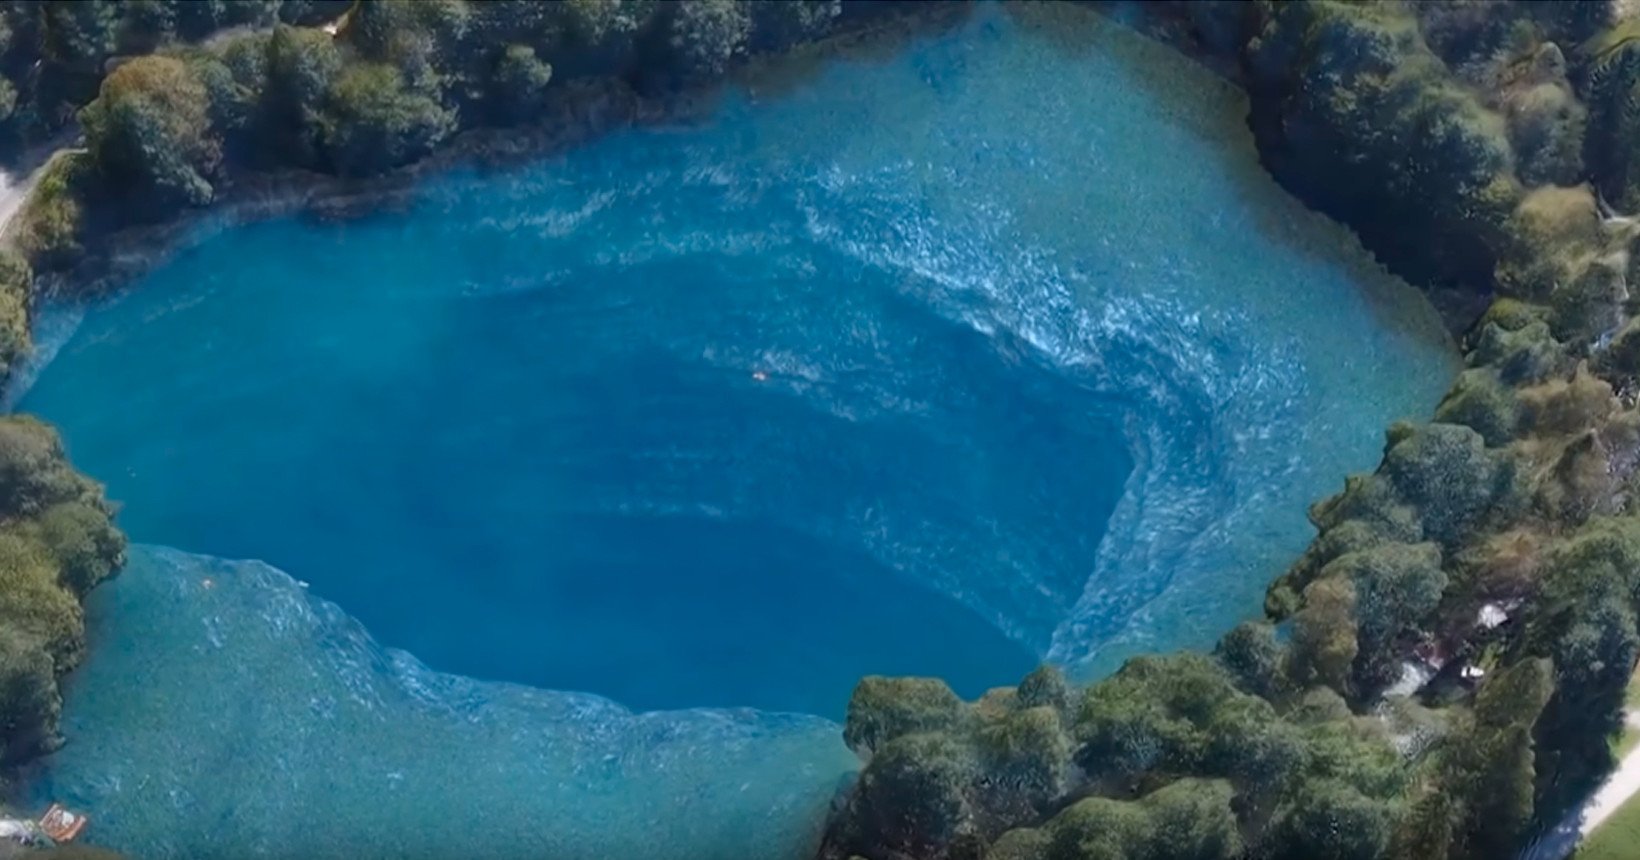 Глубина озера 10 метров. Голубое озеро «Черек-кёль&. Озеро Церик-Кель. Озеро Церик-кёль Кабардино-Балкария. Голубое озеро Церик-Кель.